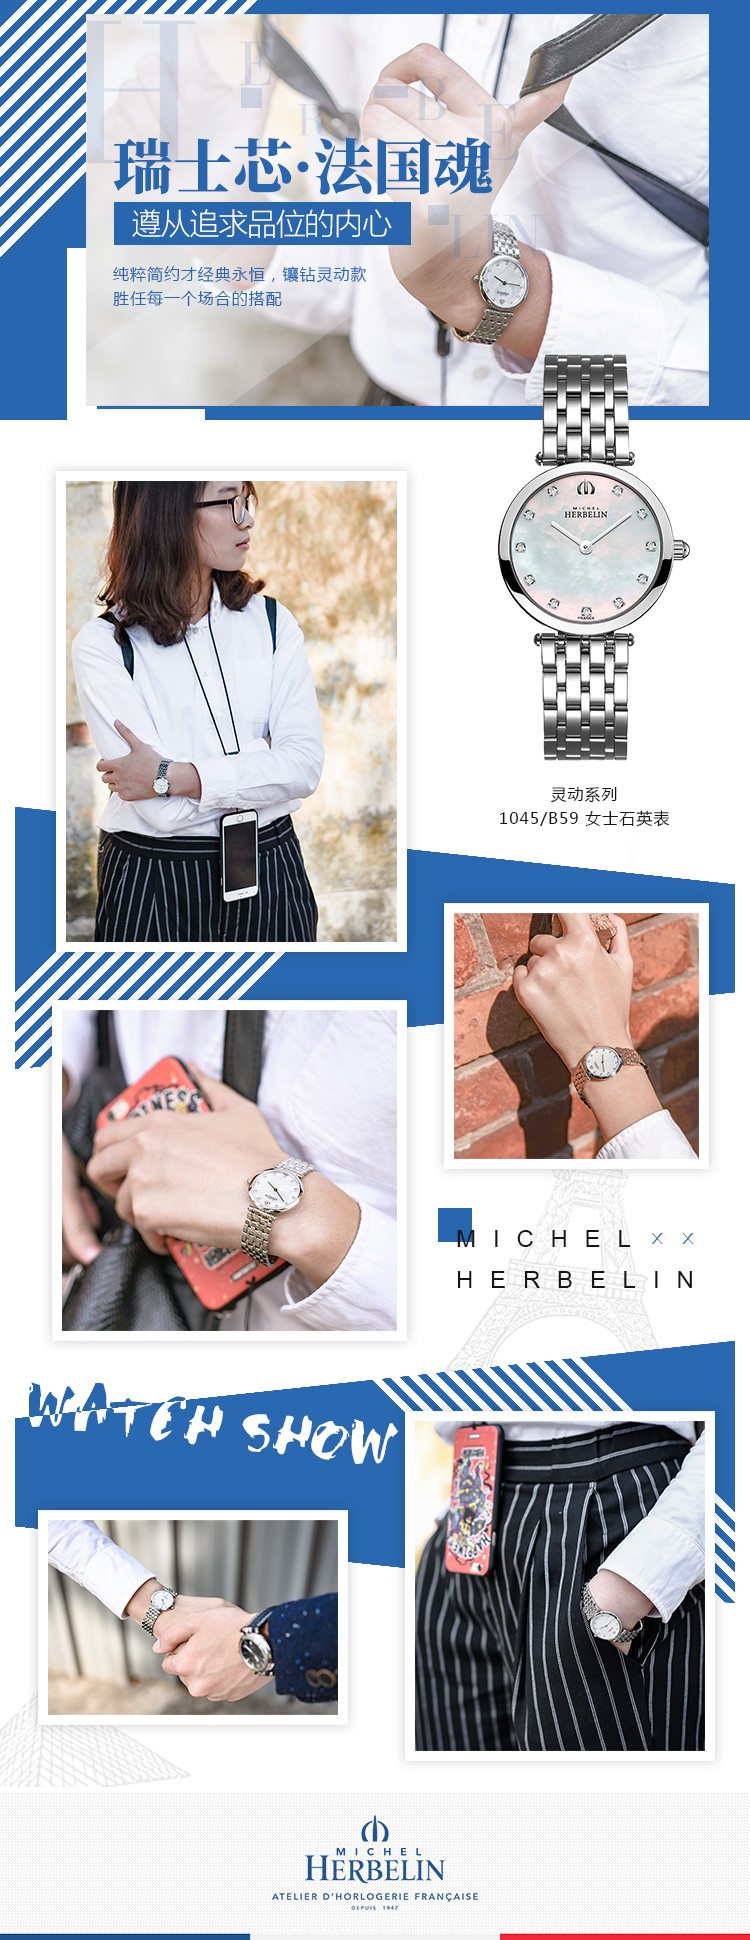 法国总统夫人之选 法国优雅腕表品牌：赫柏林Michel Herbelin-Epsilon 灵动系列 1045/B59 女士石英表